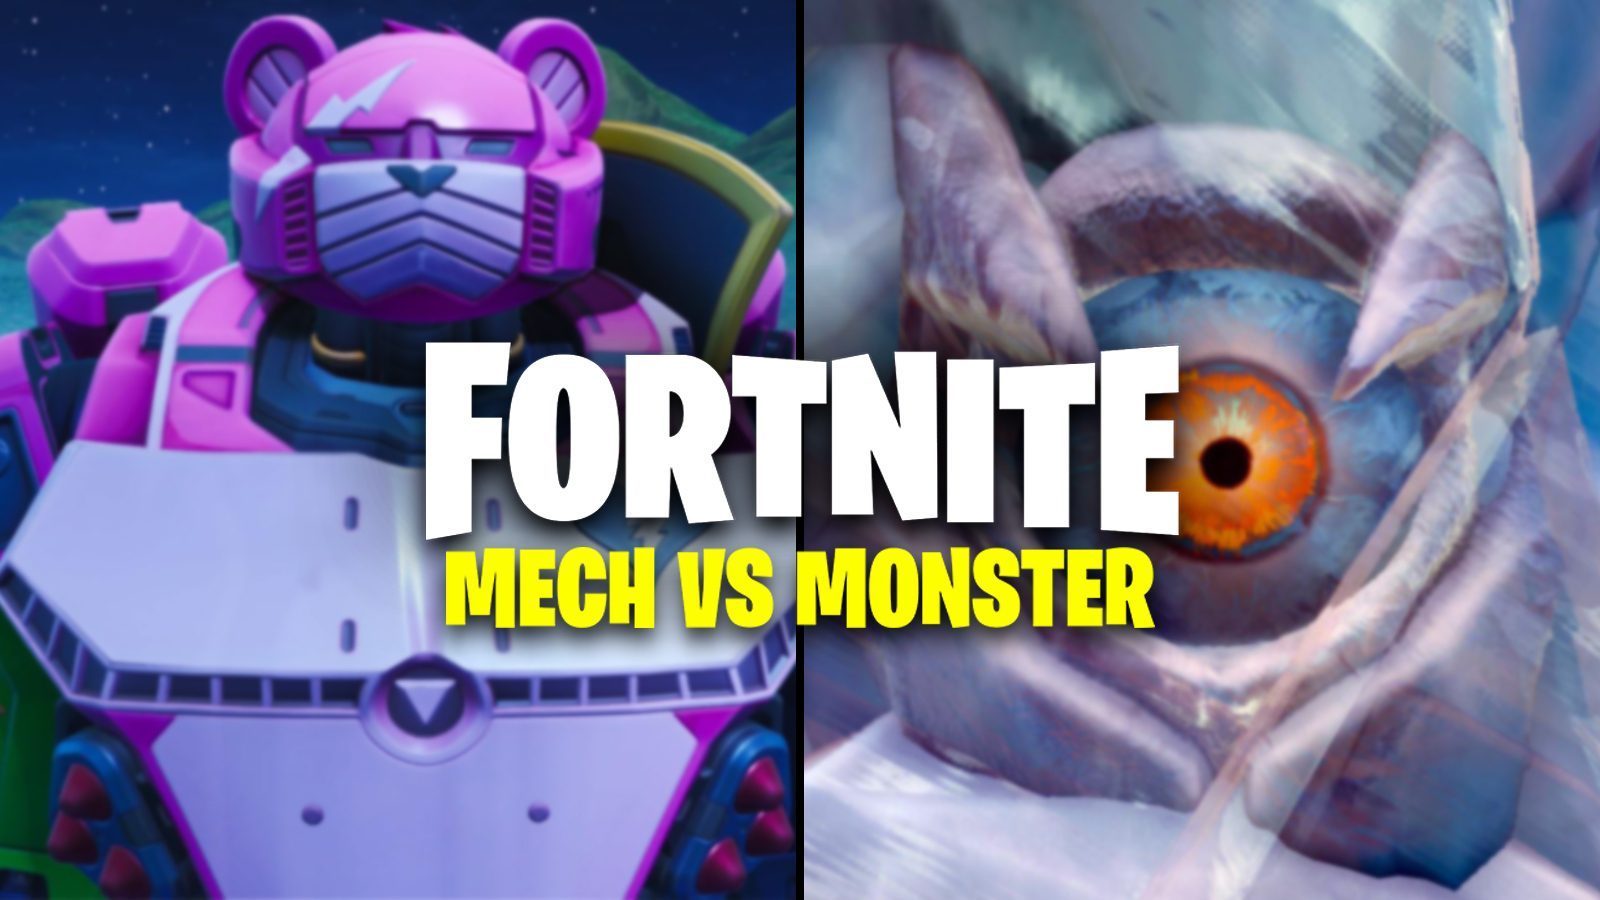 Siapa yang memenangkan pertempuran Mech Vs Monster?